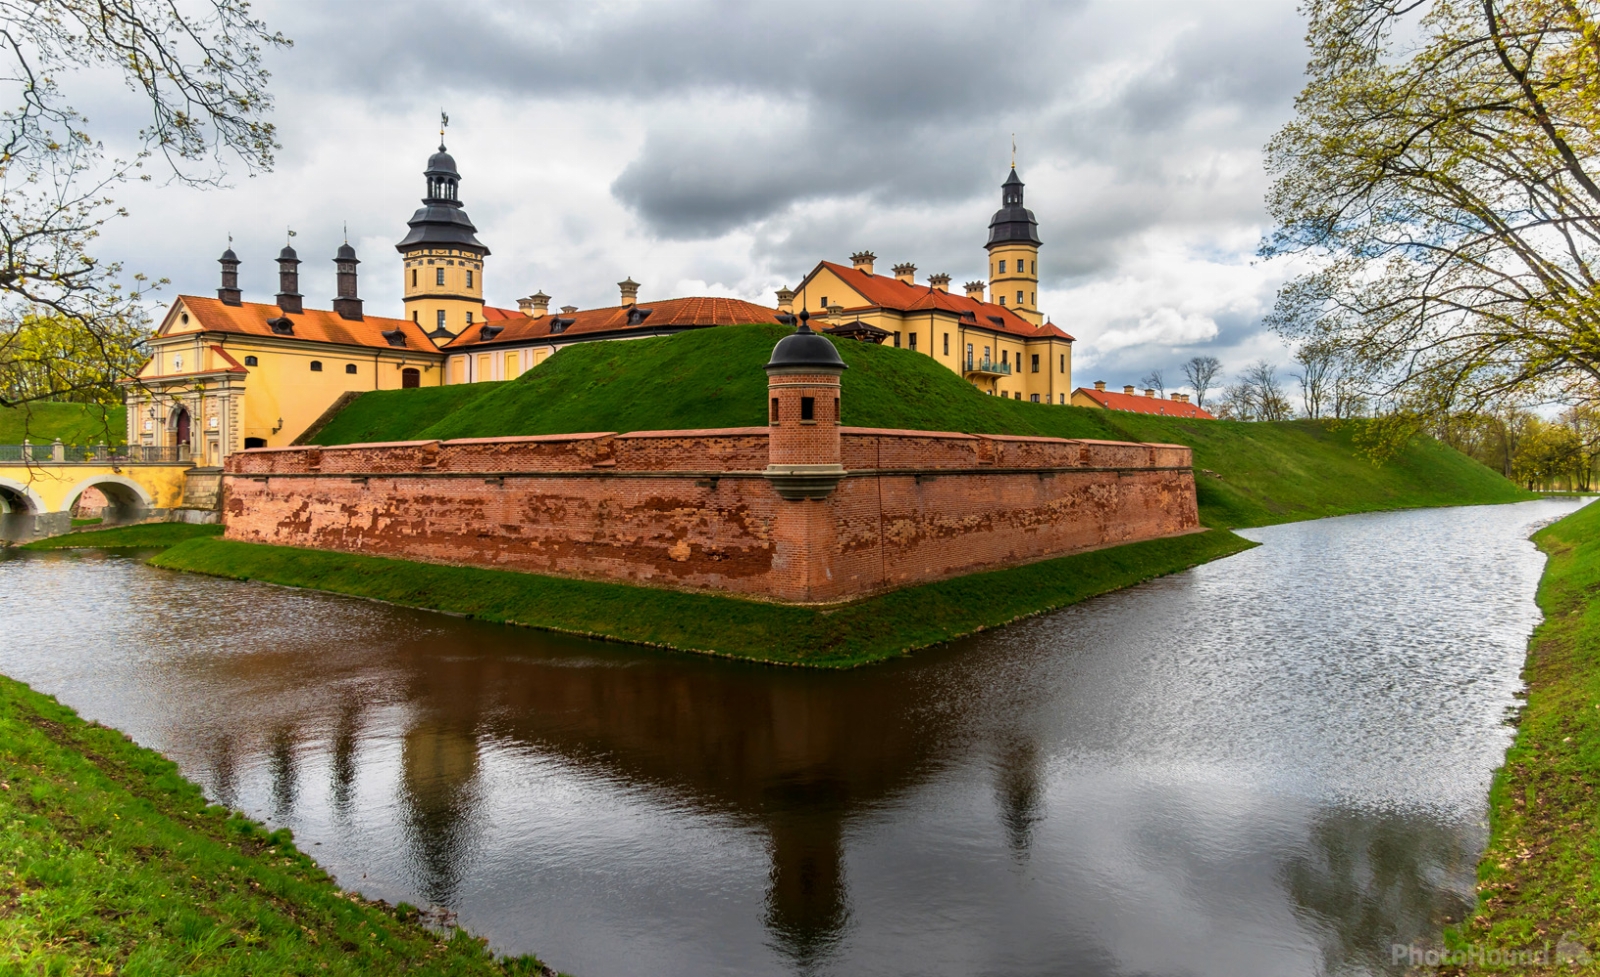 Image of Nesvizh Radziwiłł Castle by Adelheid Smitt